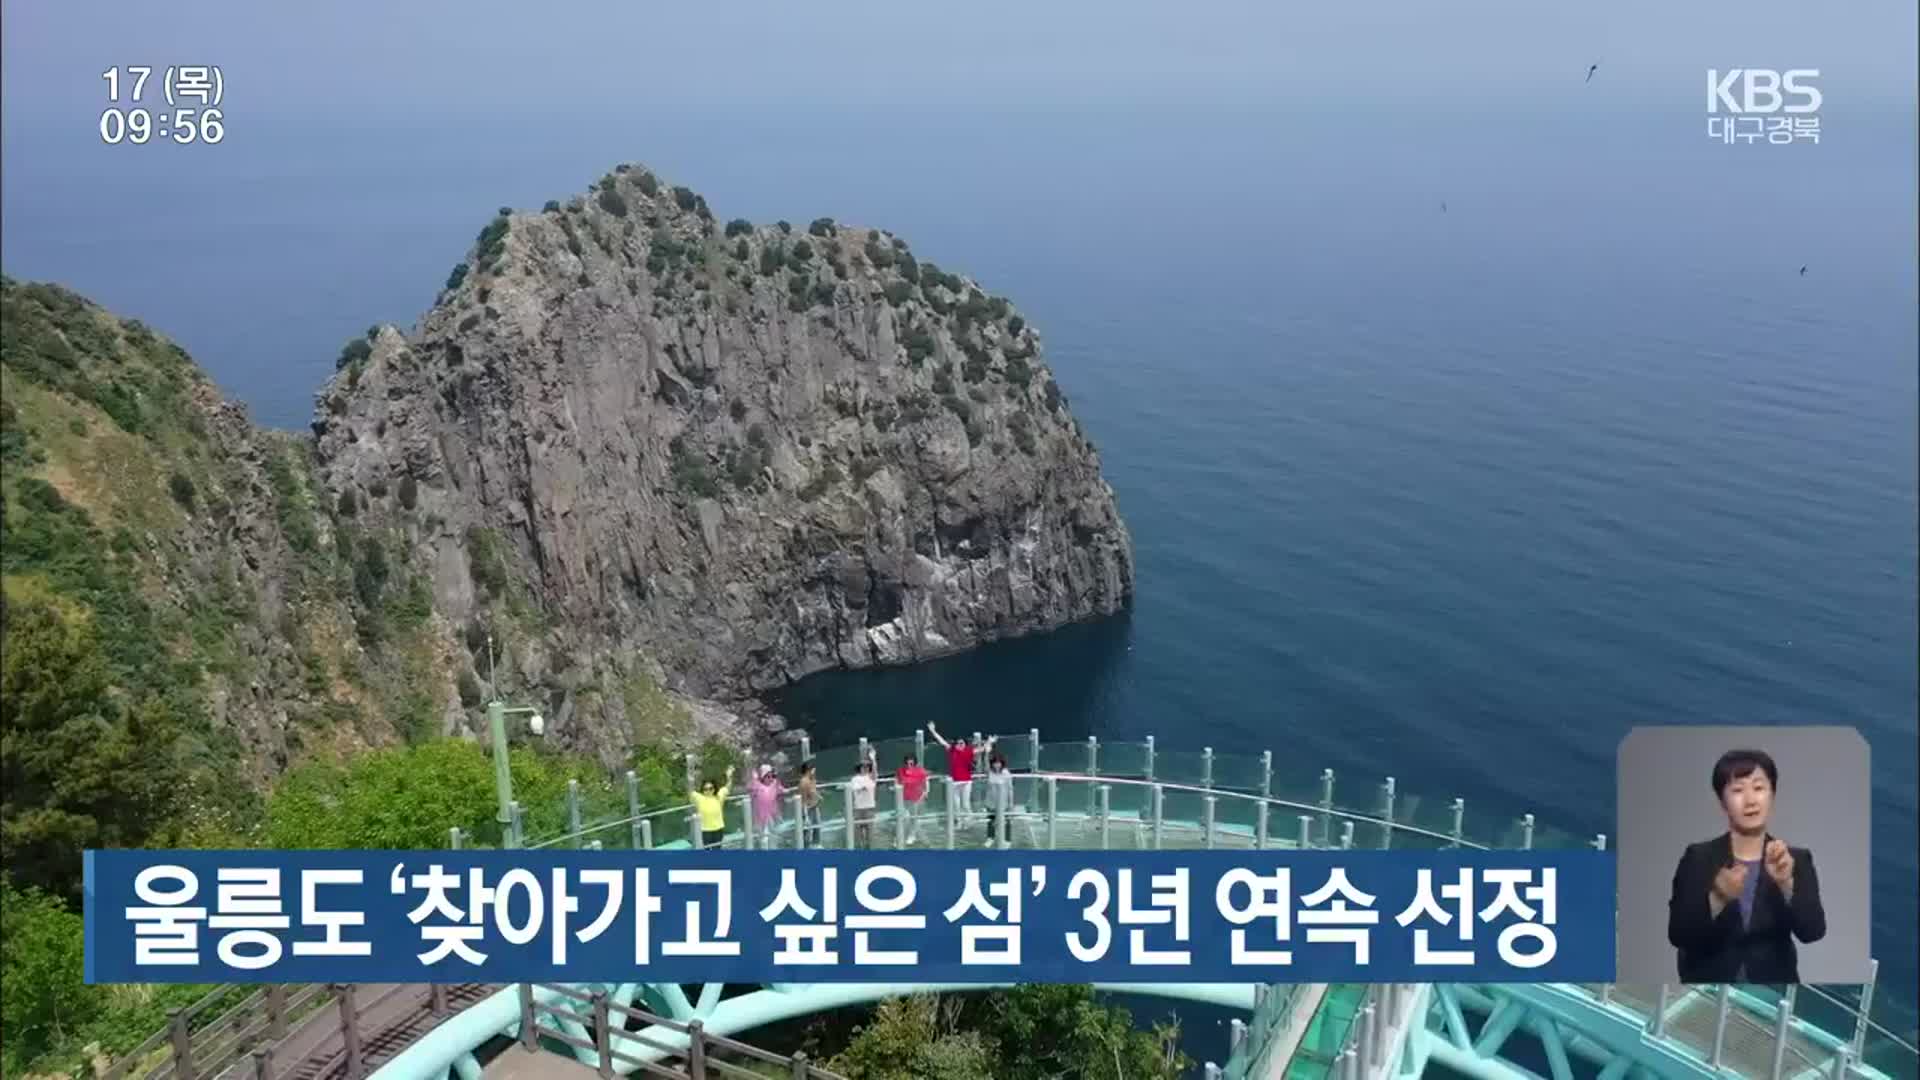 울릉도 ‘찾아가고 싶은 섬’ 3년 연속 선정